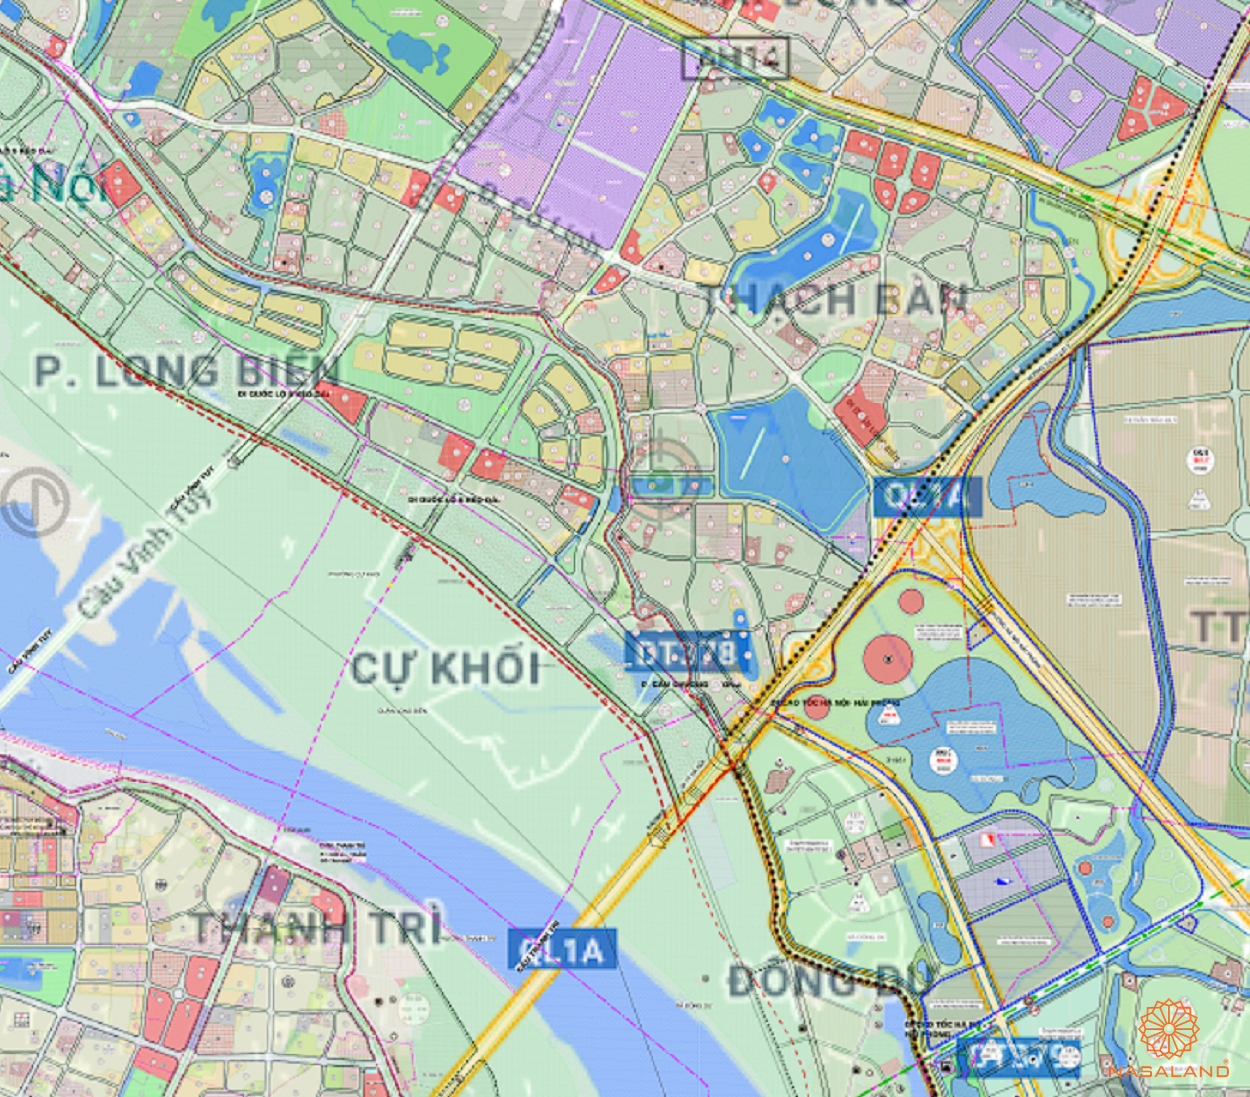 Bản đồ quy hoạch sử dụng đất Phường Cự Khối theo bản đồ quy hoạch sử dụng đất năm 2020 Quận Long Biên, Thành phố Hà Nội.